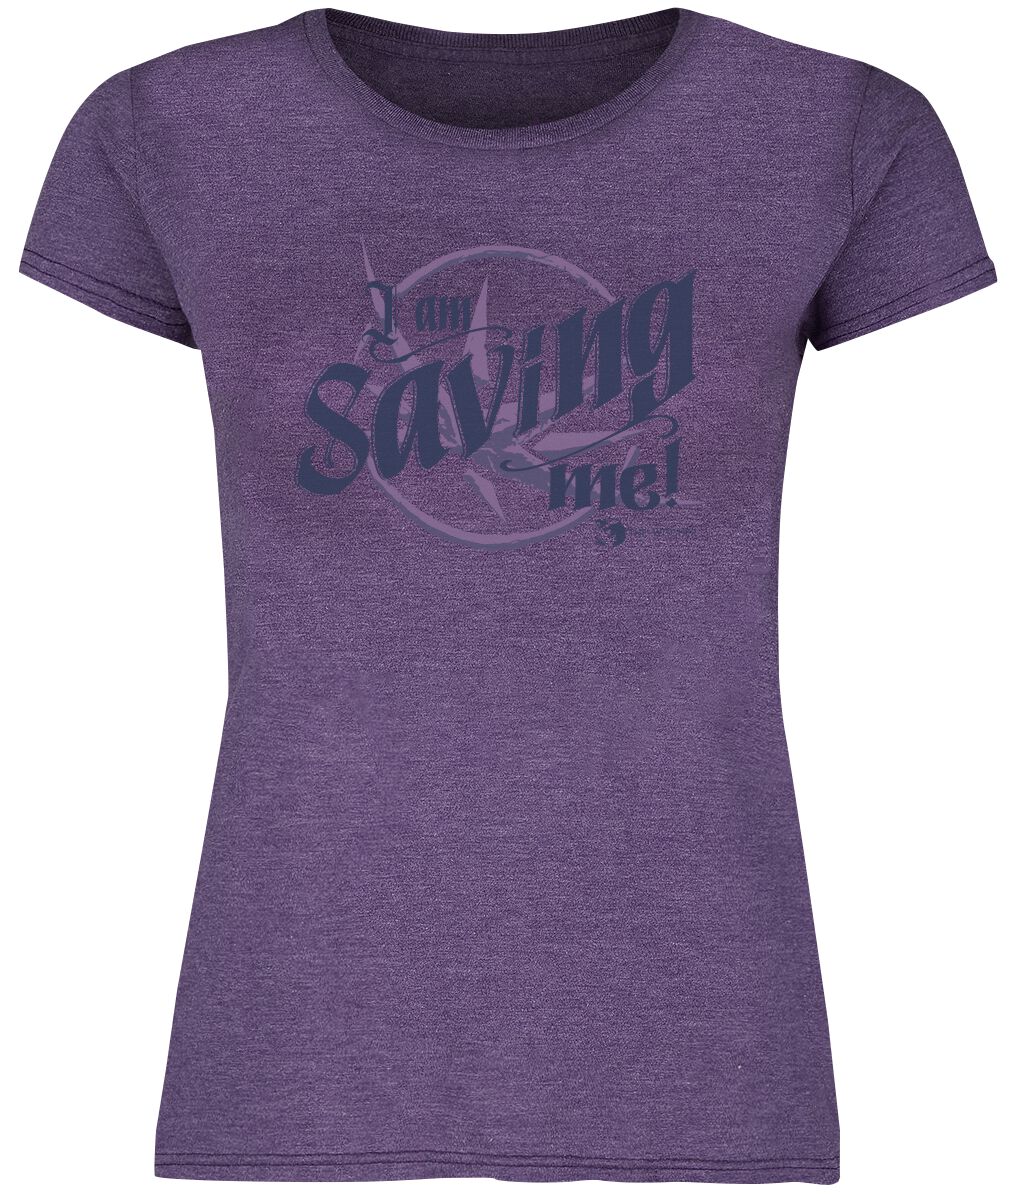 T-Shirt Manches courtes de The Witcher - Saving Me - S à XXL - pour Femme - lilas